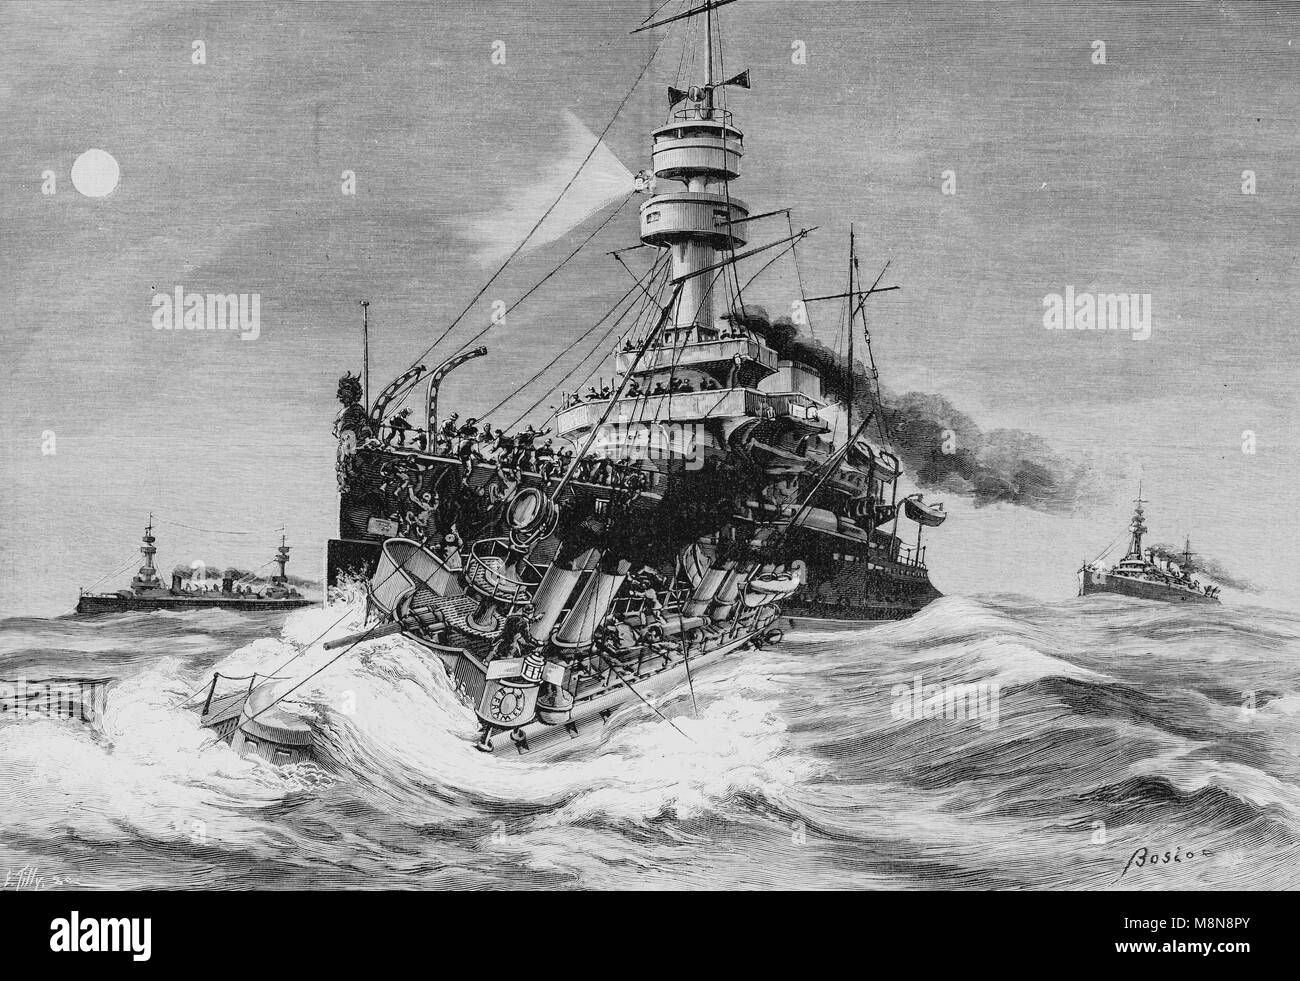 Naufrage du contre-torpilleur Framée le 11 août 1900 lors d'une collision au cours de manoeuvres navales le long de la côte, photo de Porutgal l'hebdomadaire français journal l'illustration, 28 juillet 1900 Banque D'Images